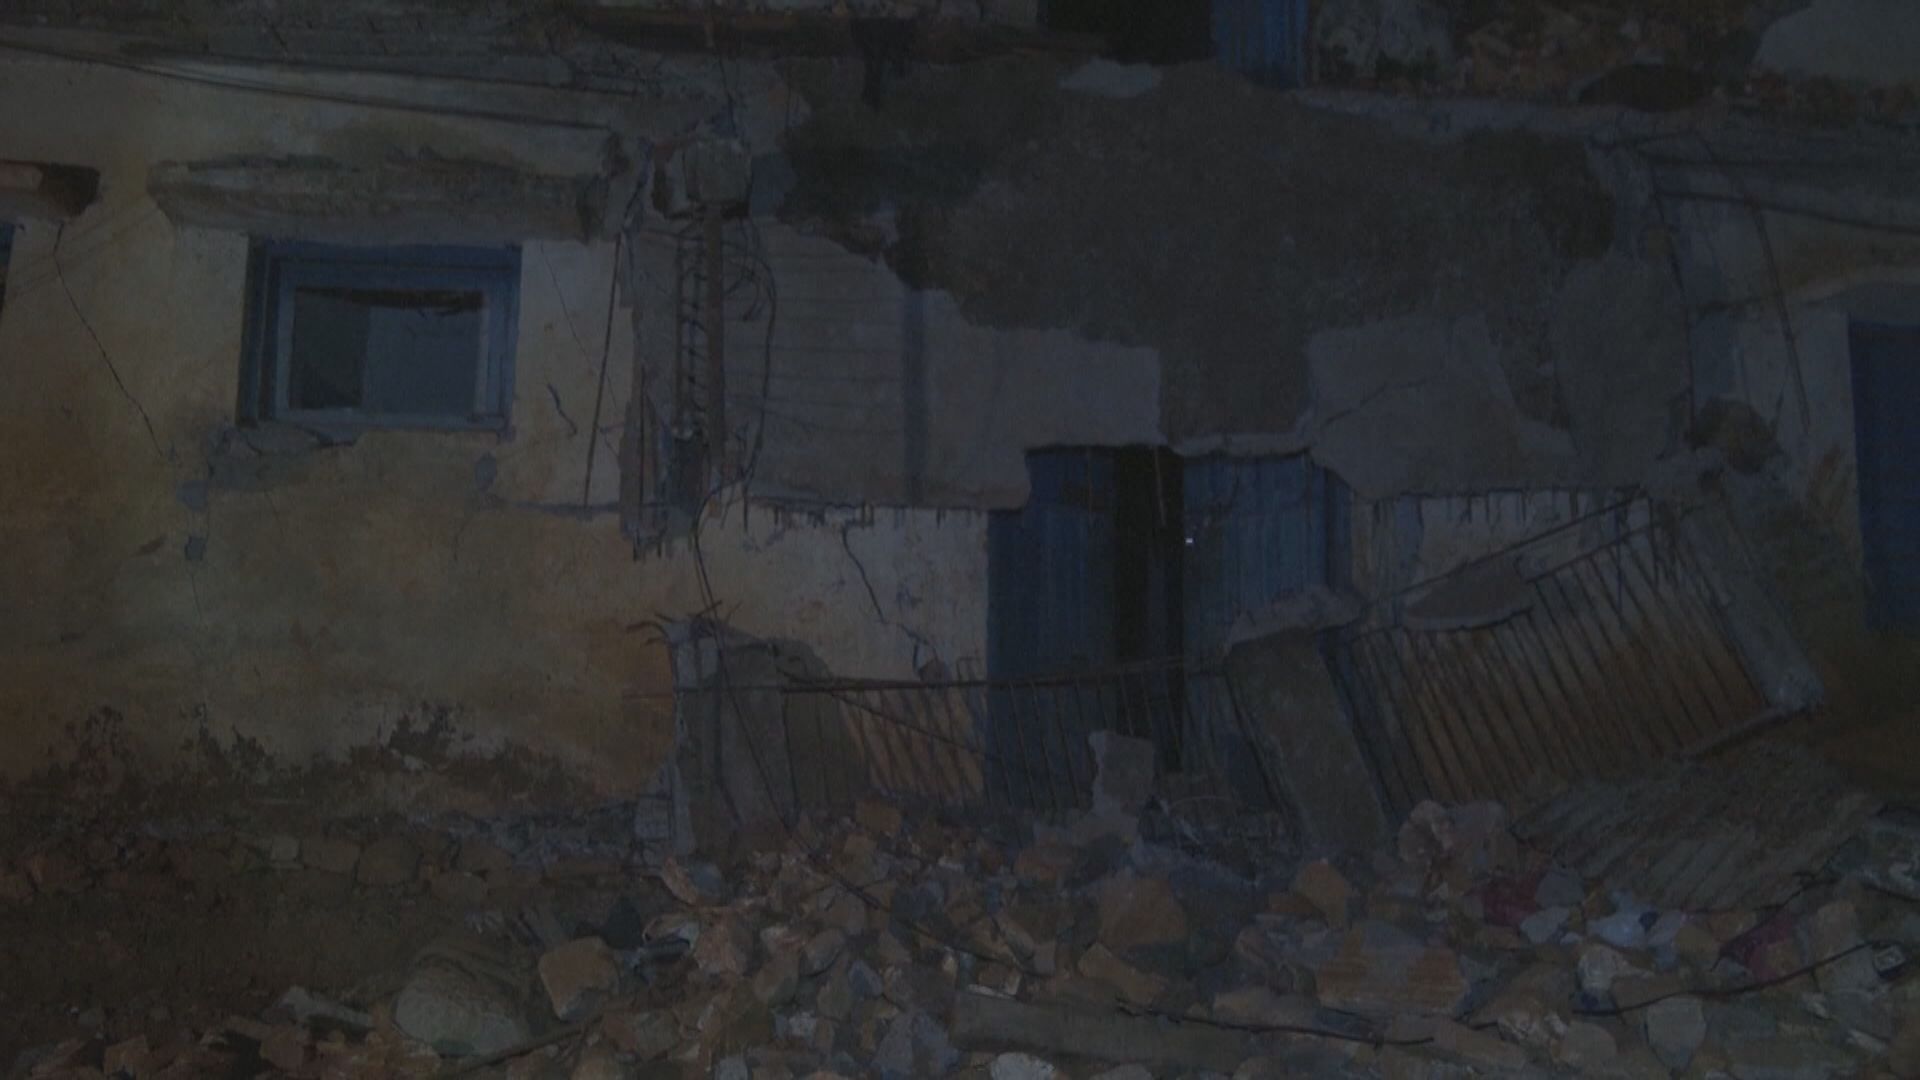 尼泊爾地震死亡人數增至157人 習近平向尼泊爾總統致慰問電